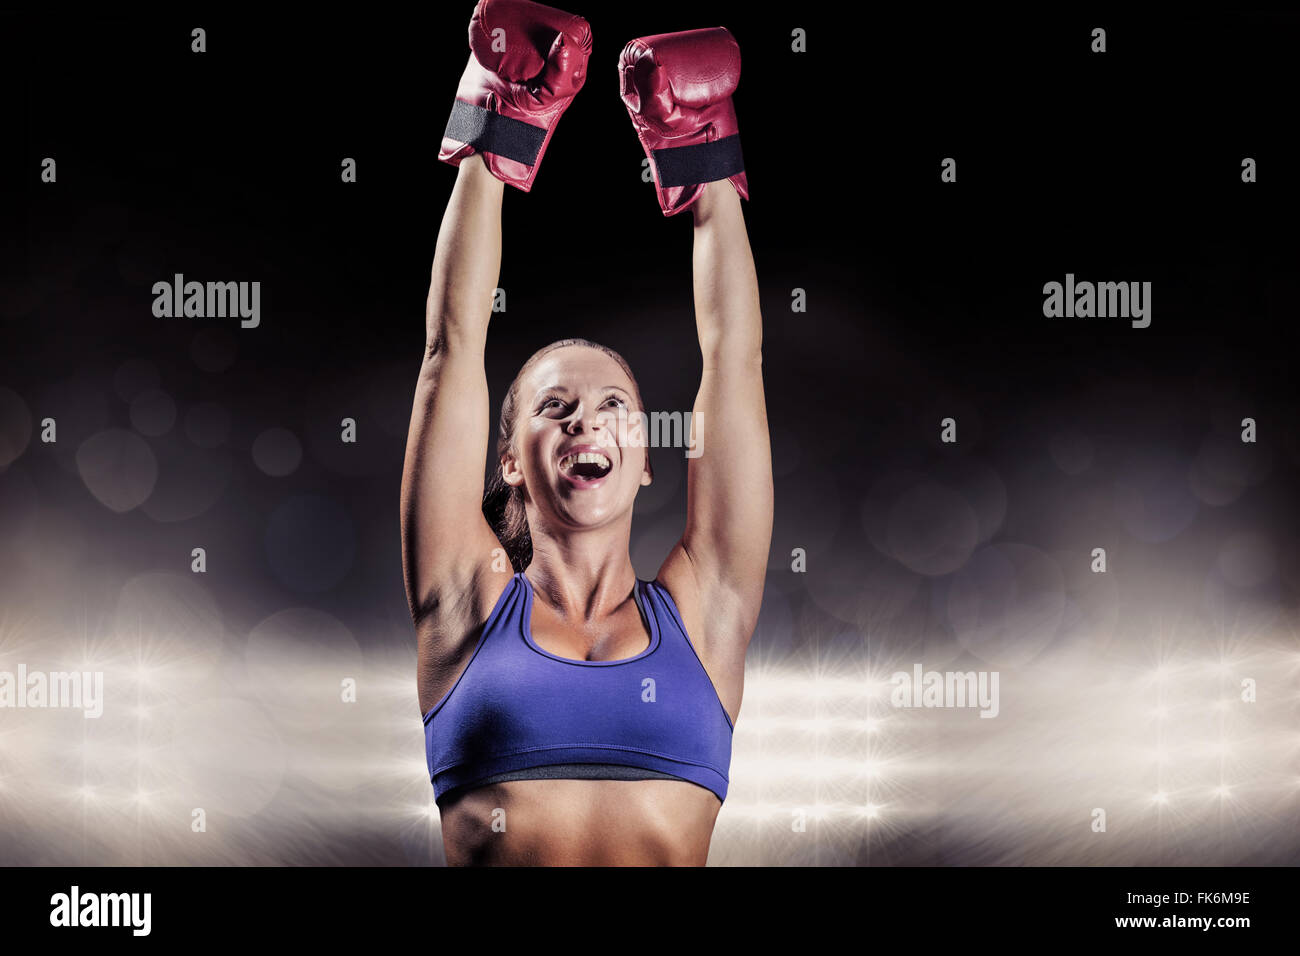 Imagen compuesta de ganar luchador con los brazos levantados Foto de stock